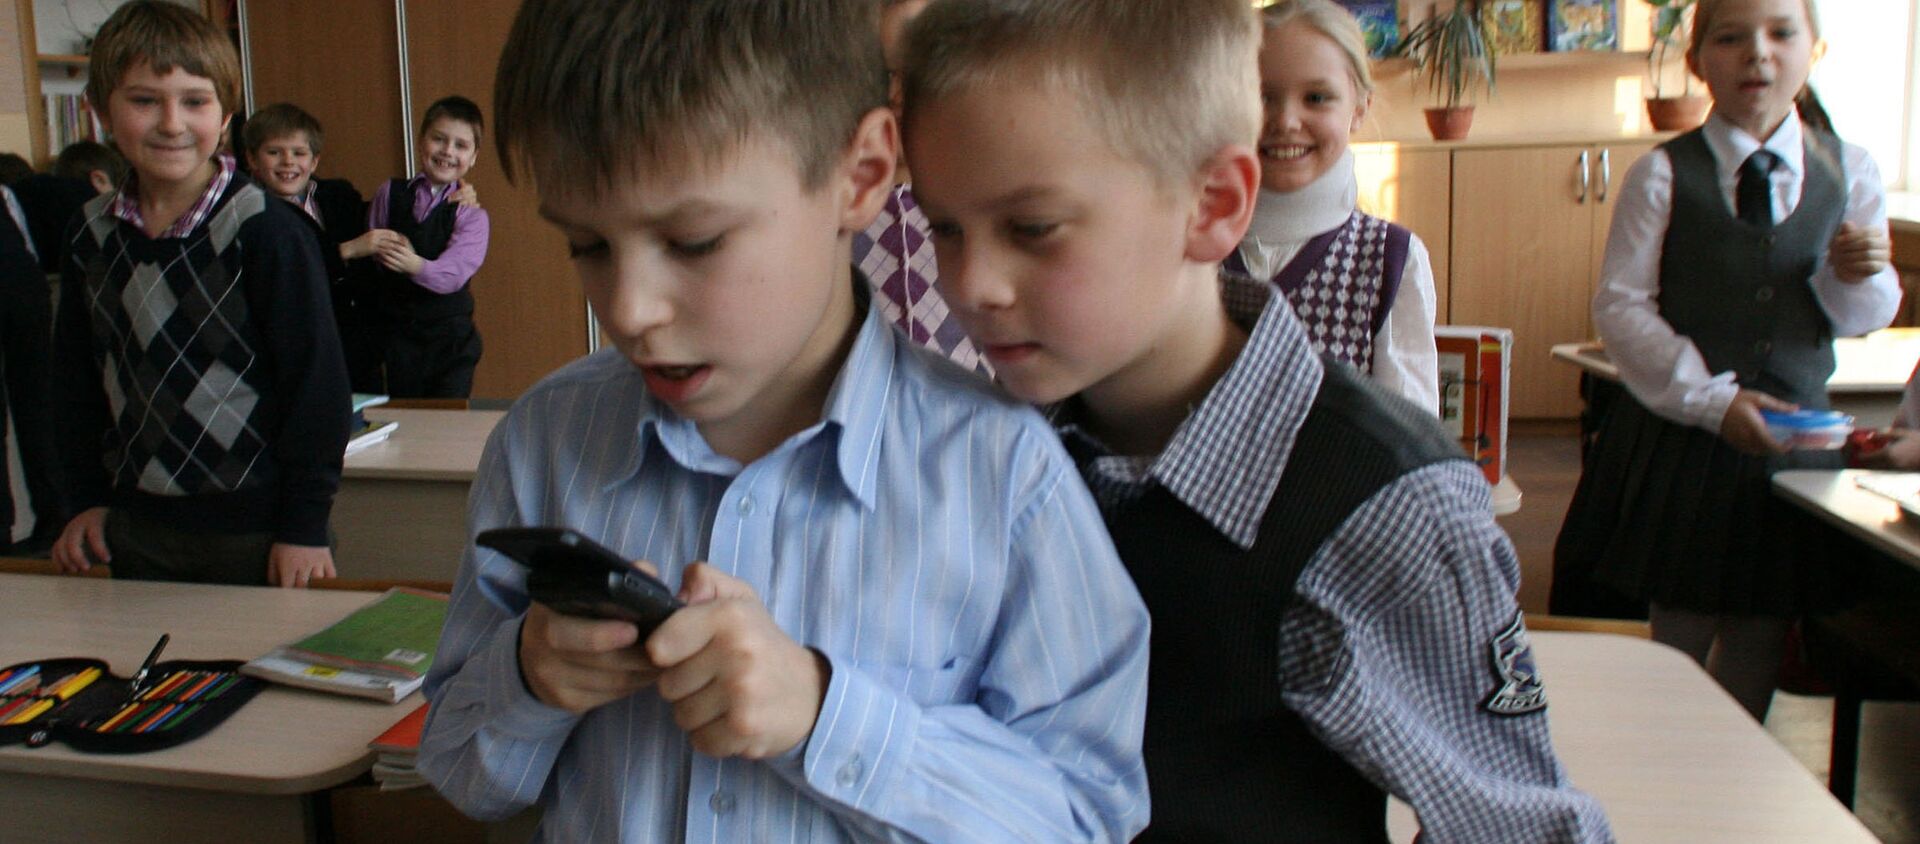 Məktəbli uşaqlar mobil telefonla oynayırlar, arxiv şəkli - Sputnik Azərbaycan, 1920, 04.11.2018